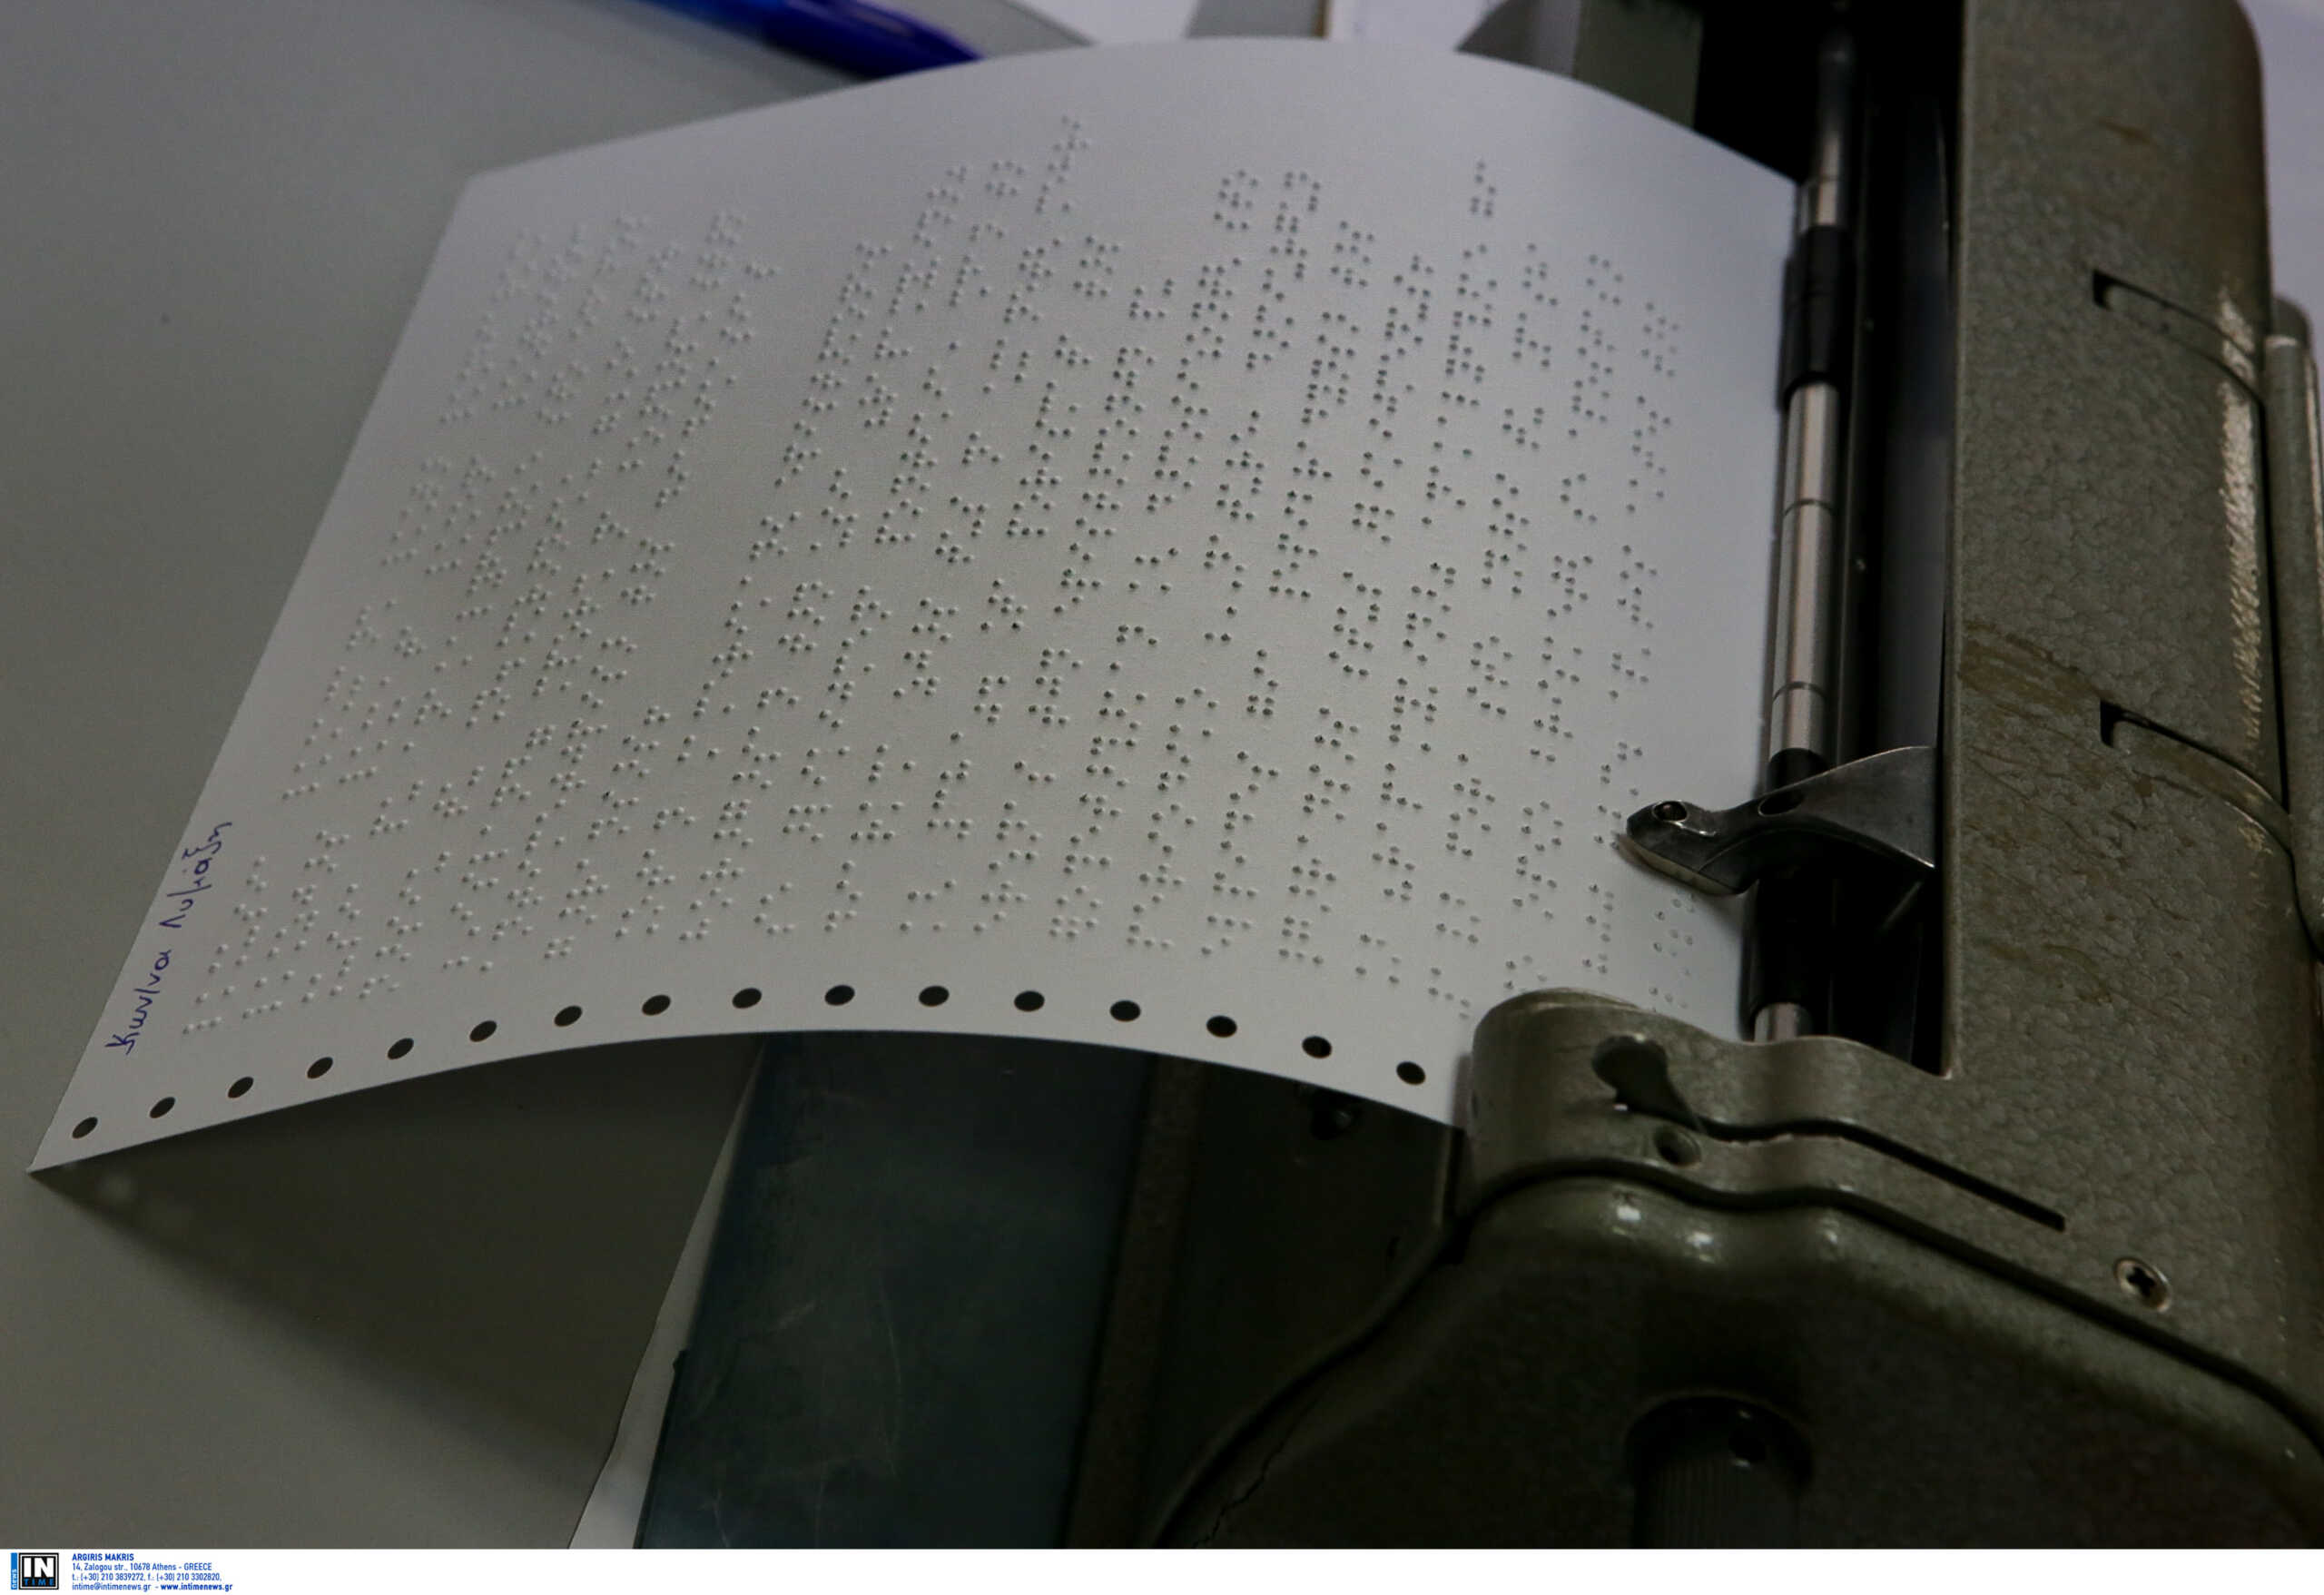 Το Μαξίμου έστειλε γραφομηχανές Braille στο Κέντρο Εκπαιδεύσεως και Αποκαταστάσεως Τυφλών